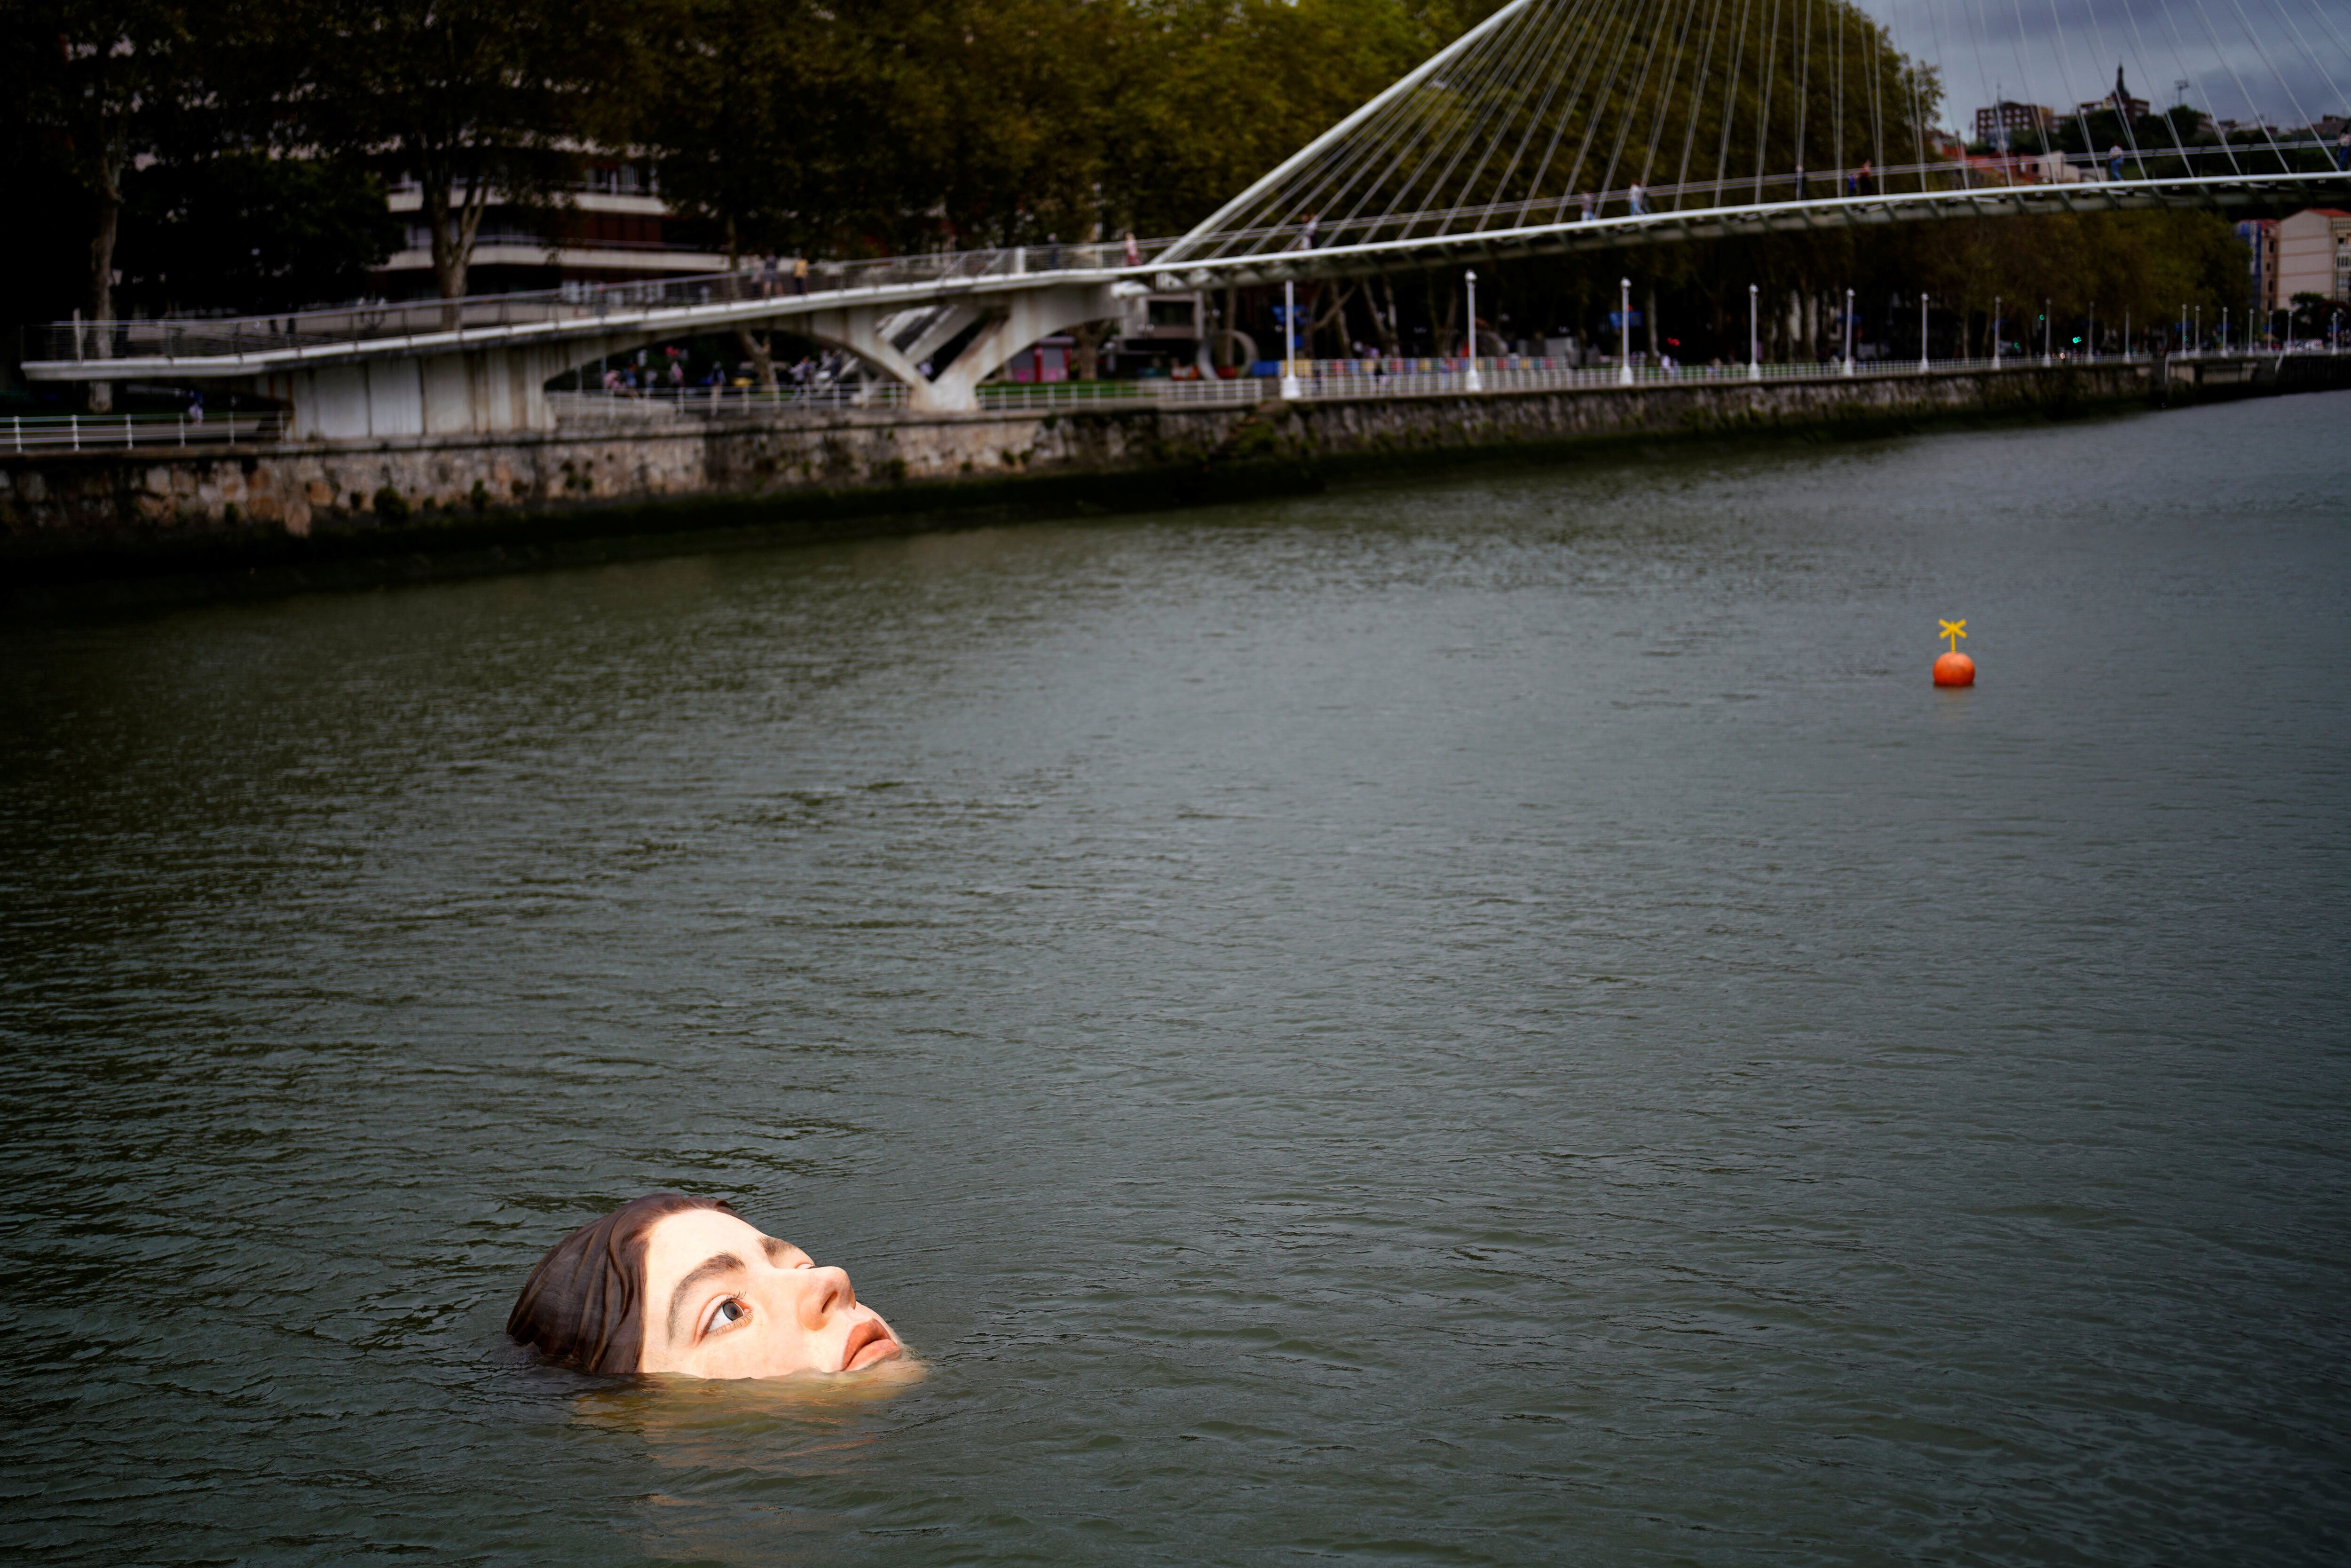 Una escultura de fibra de vidrio titulada 'Bihar' (Mañana en euskera), del artista hiperrealista mexicano Rubén Orozco, está sumergida en el río Nervión en Bilbao, España,  27 septiembre 2021.
REUTERS/Vincent West